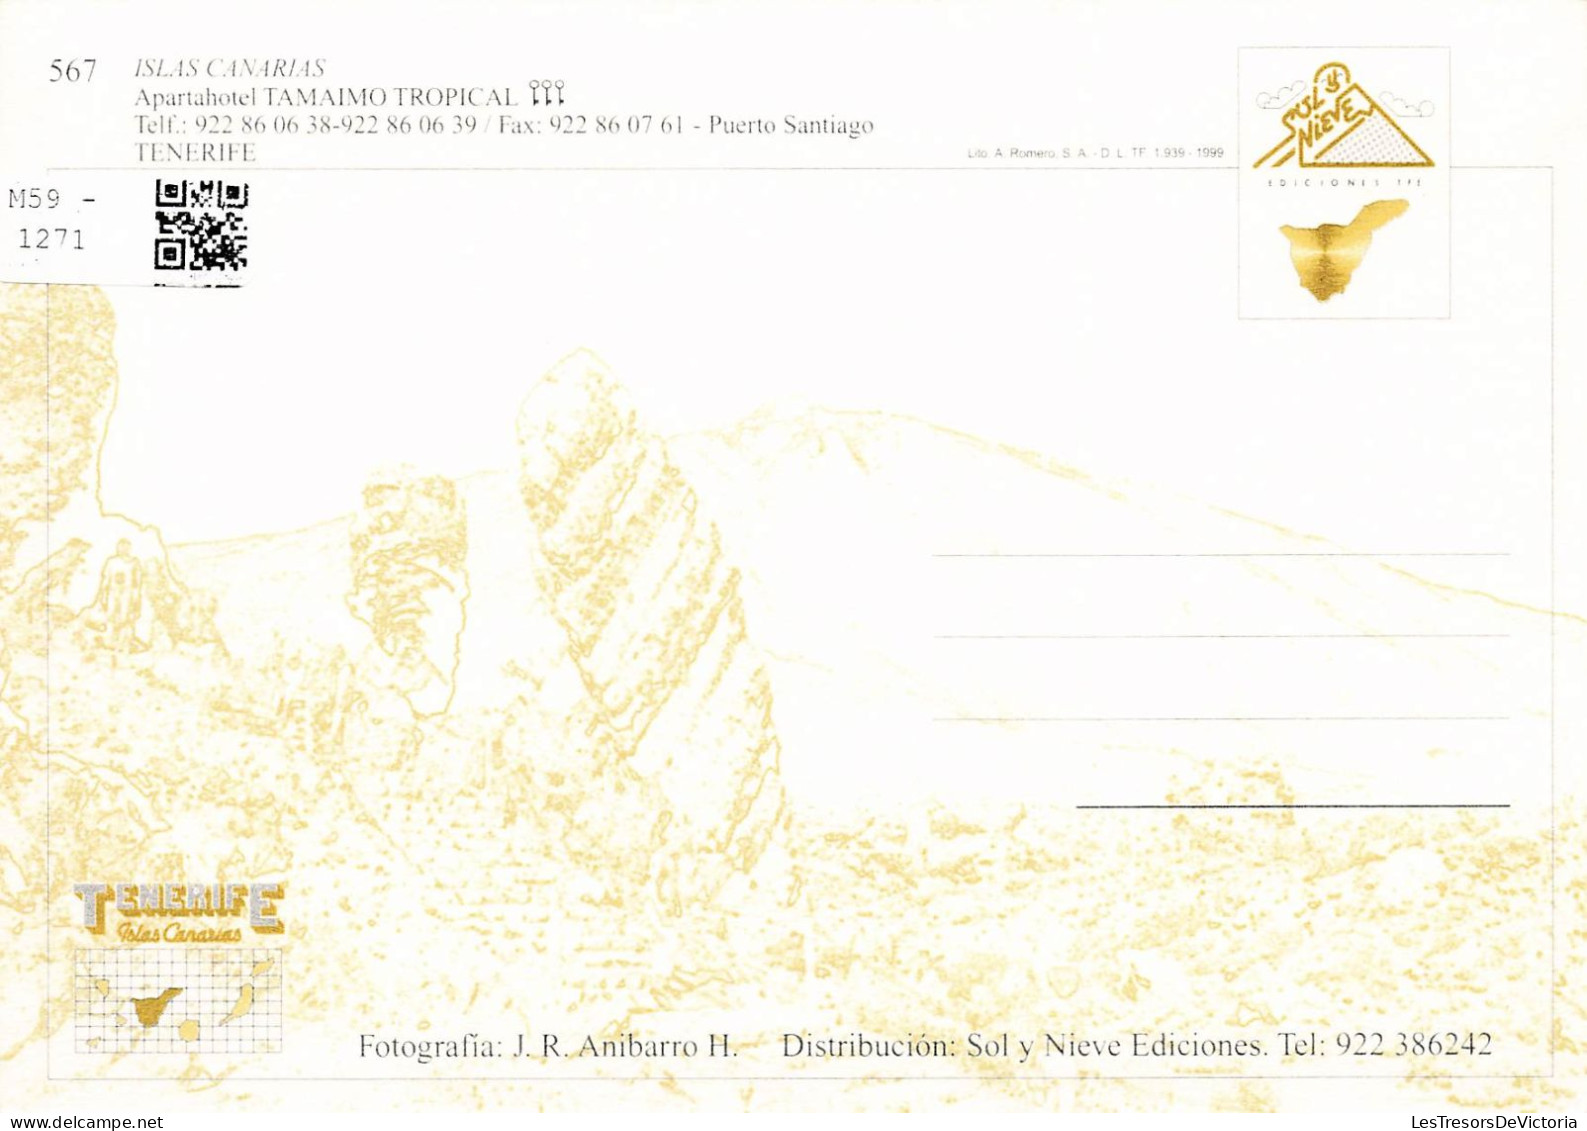 ESPAGNE - Tenerife - Los Gigantes - Puerto Santiago - Carte Postale - Tenerife